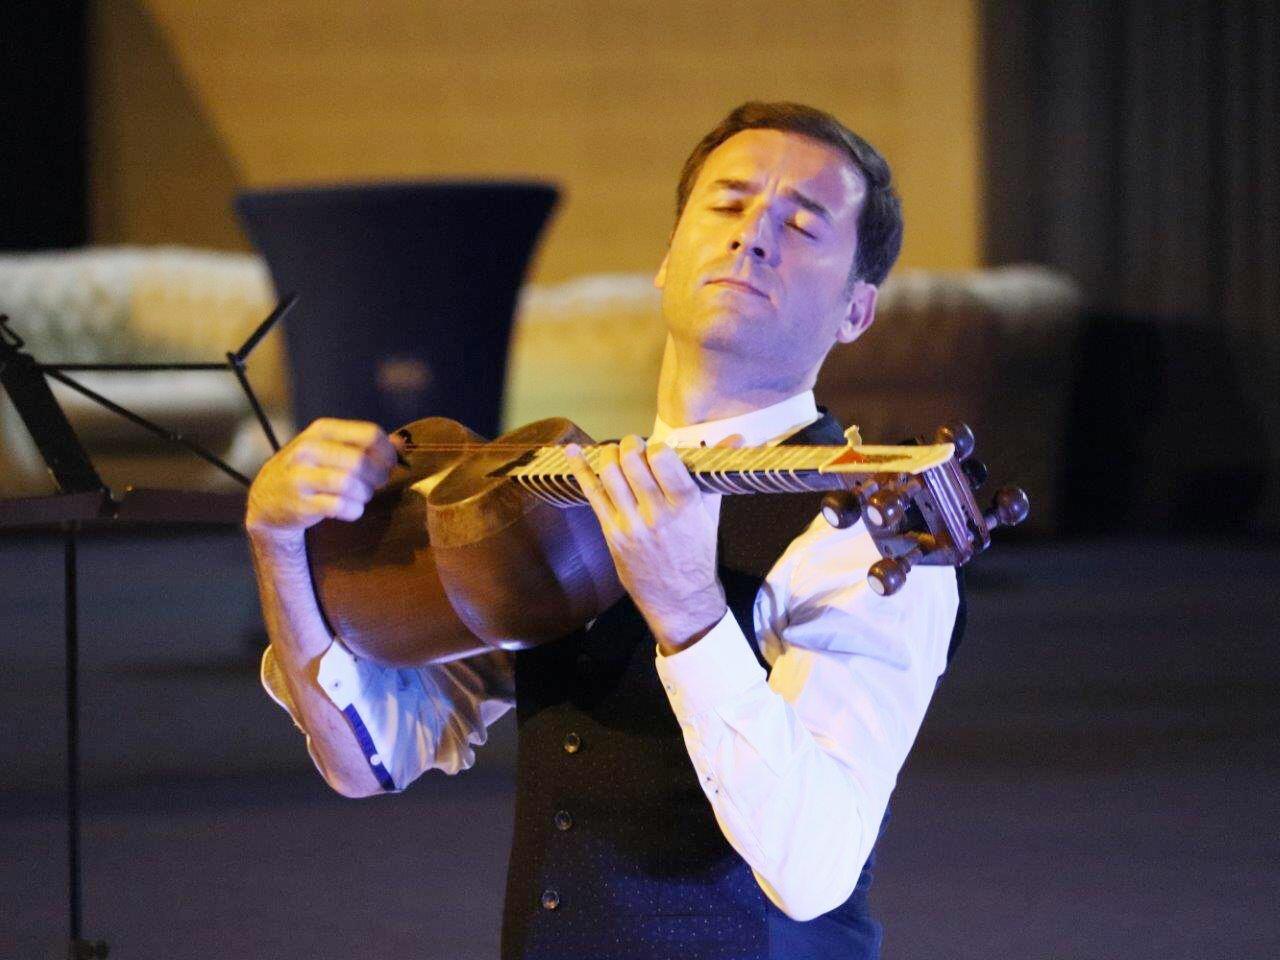 Впервые азербайджанский музыкант удостоен именной медали французского города Карьер-су-Пуасси